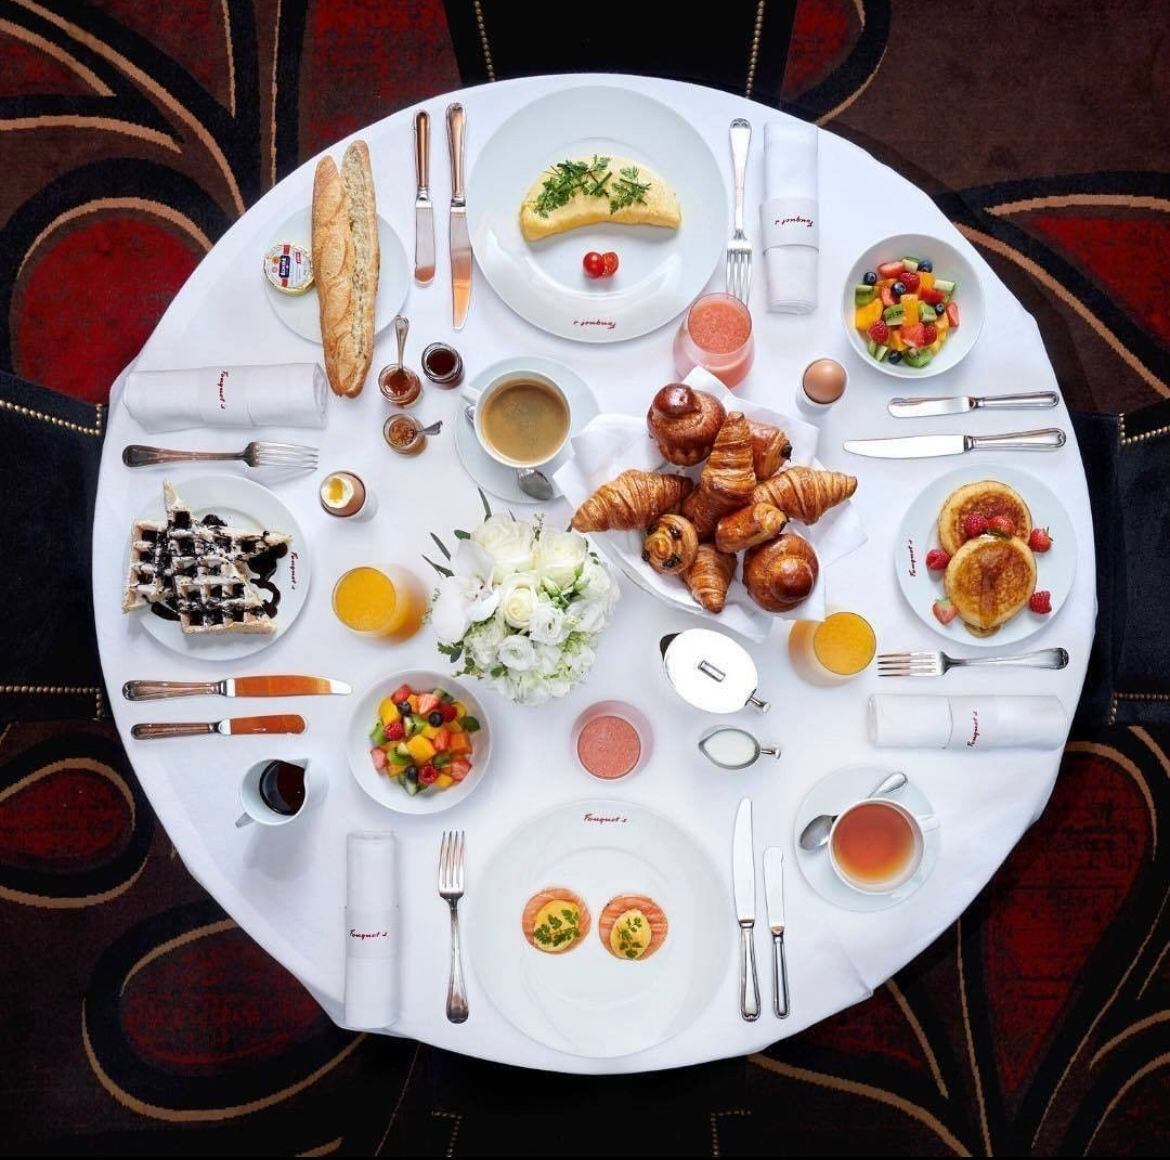 El restaurante Brasserie Fouquet’s tiene una carta para las diferentes comidas del día. (Foto: Instagram / @fouquets.paris)